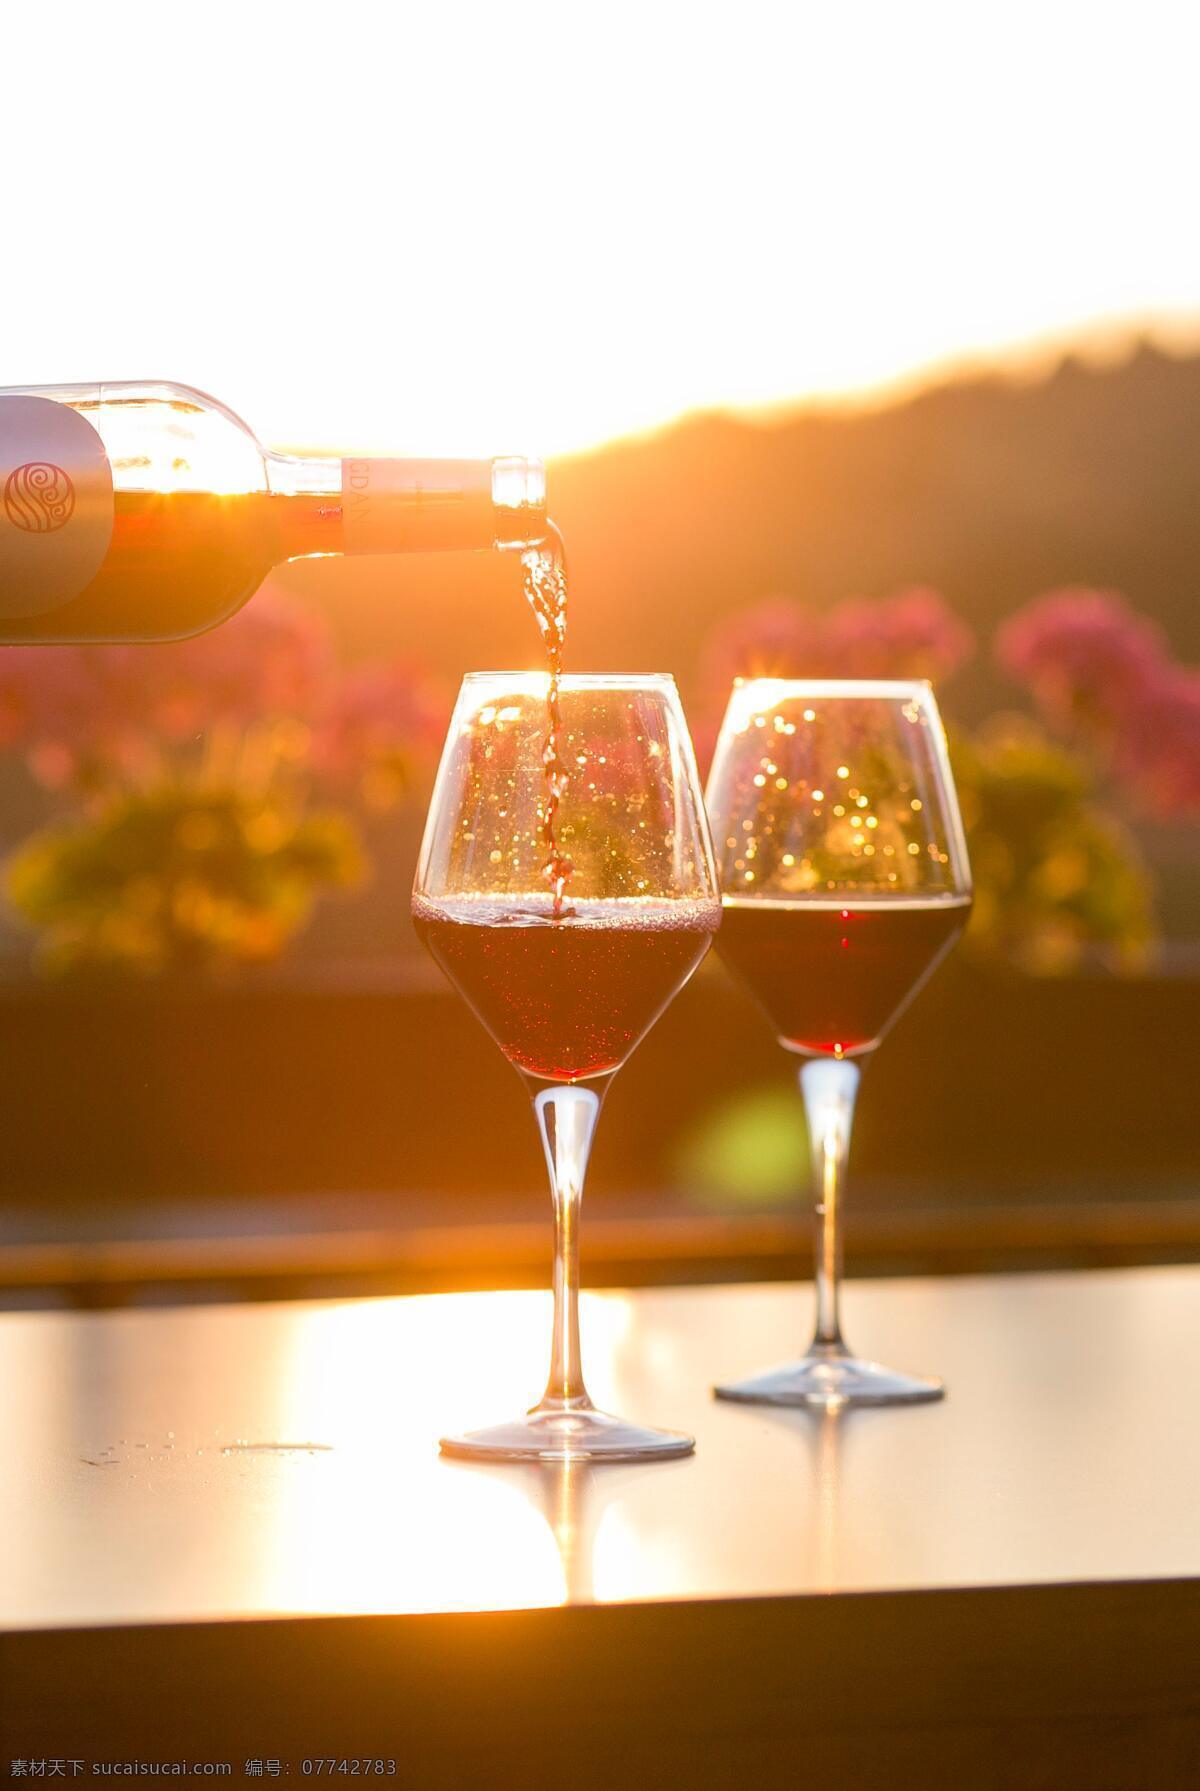 红酒 倒酒 葡萄酒 干红葡萄酒 高脚杯 阳光 花园 生活百科 生活素材